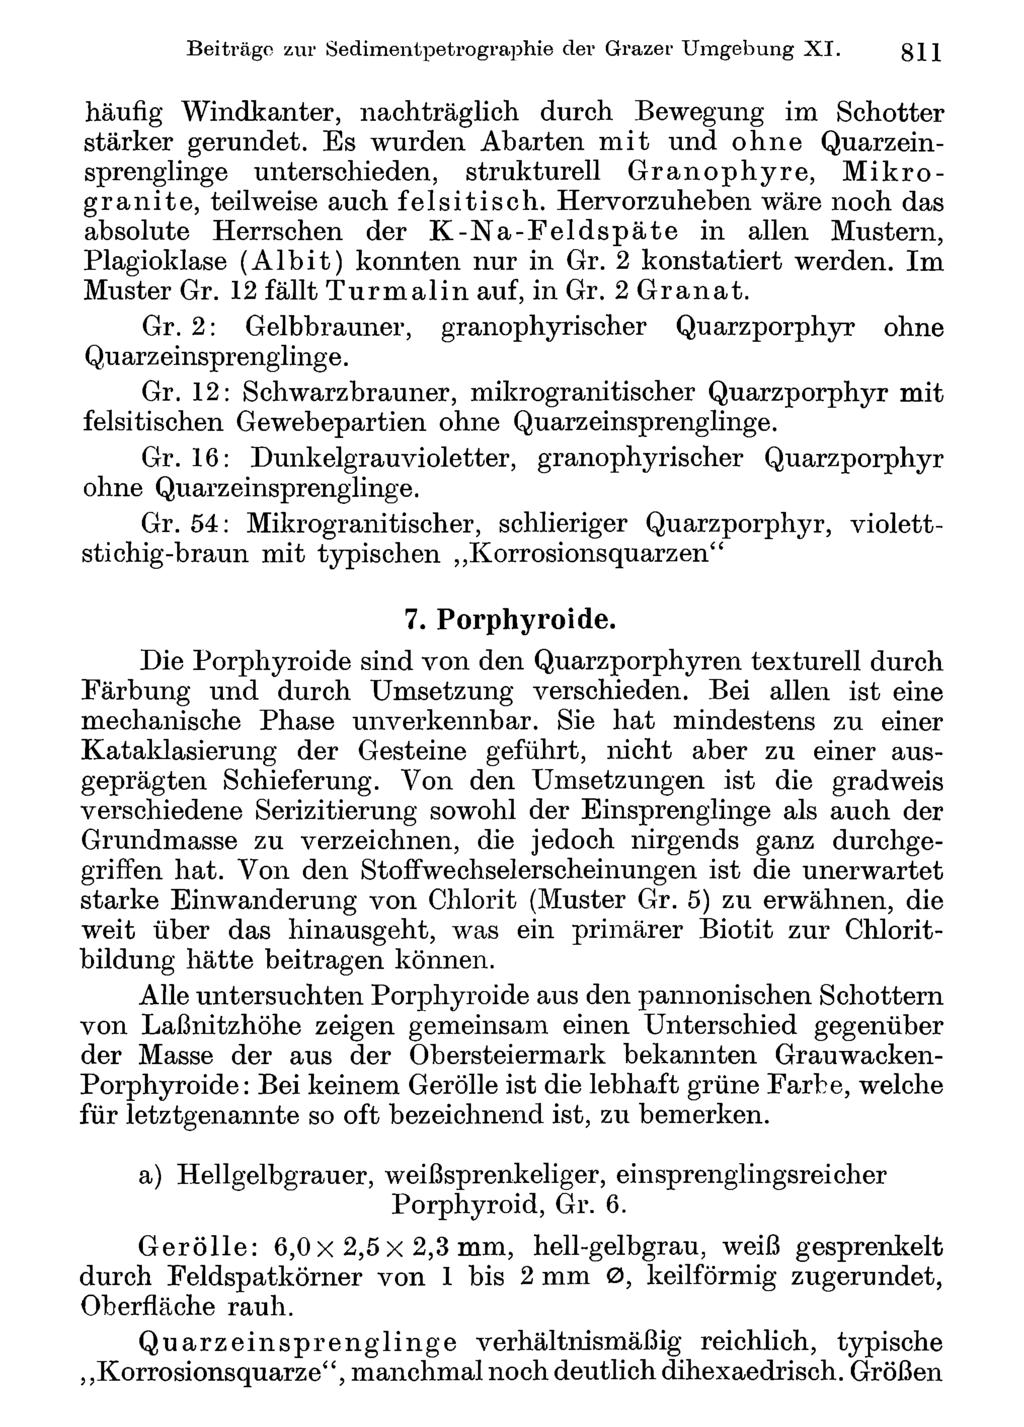 Beiti ägo Akademie zur Sedimentpetrographie d. Wissenschaften Wien; download der unter Grazer www.biologiezentrum.at Umgebung X I.